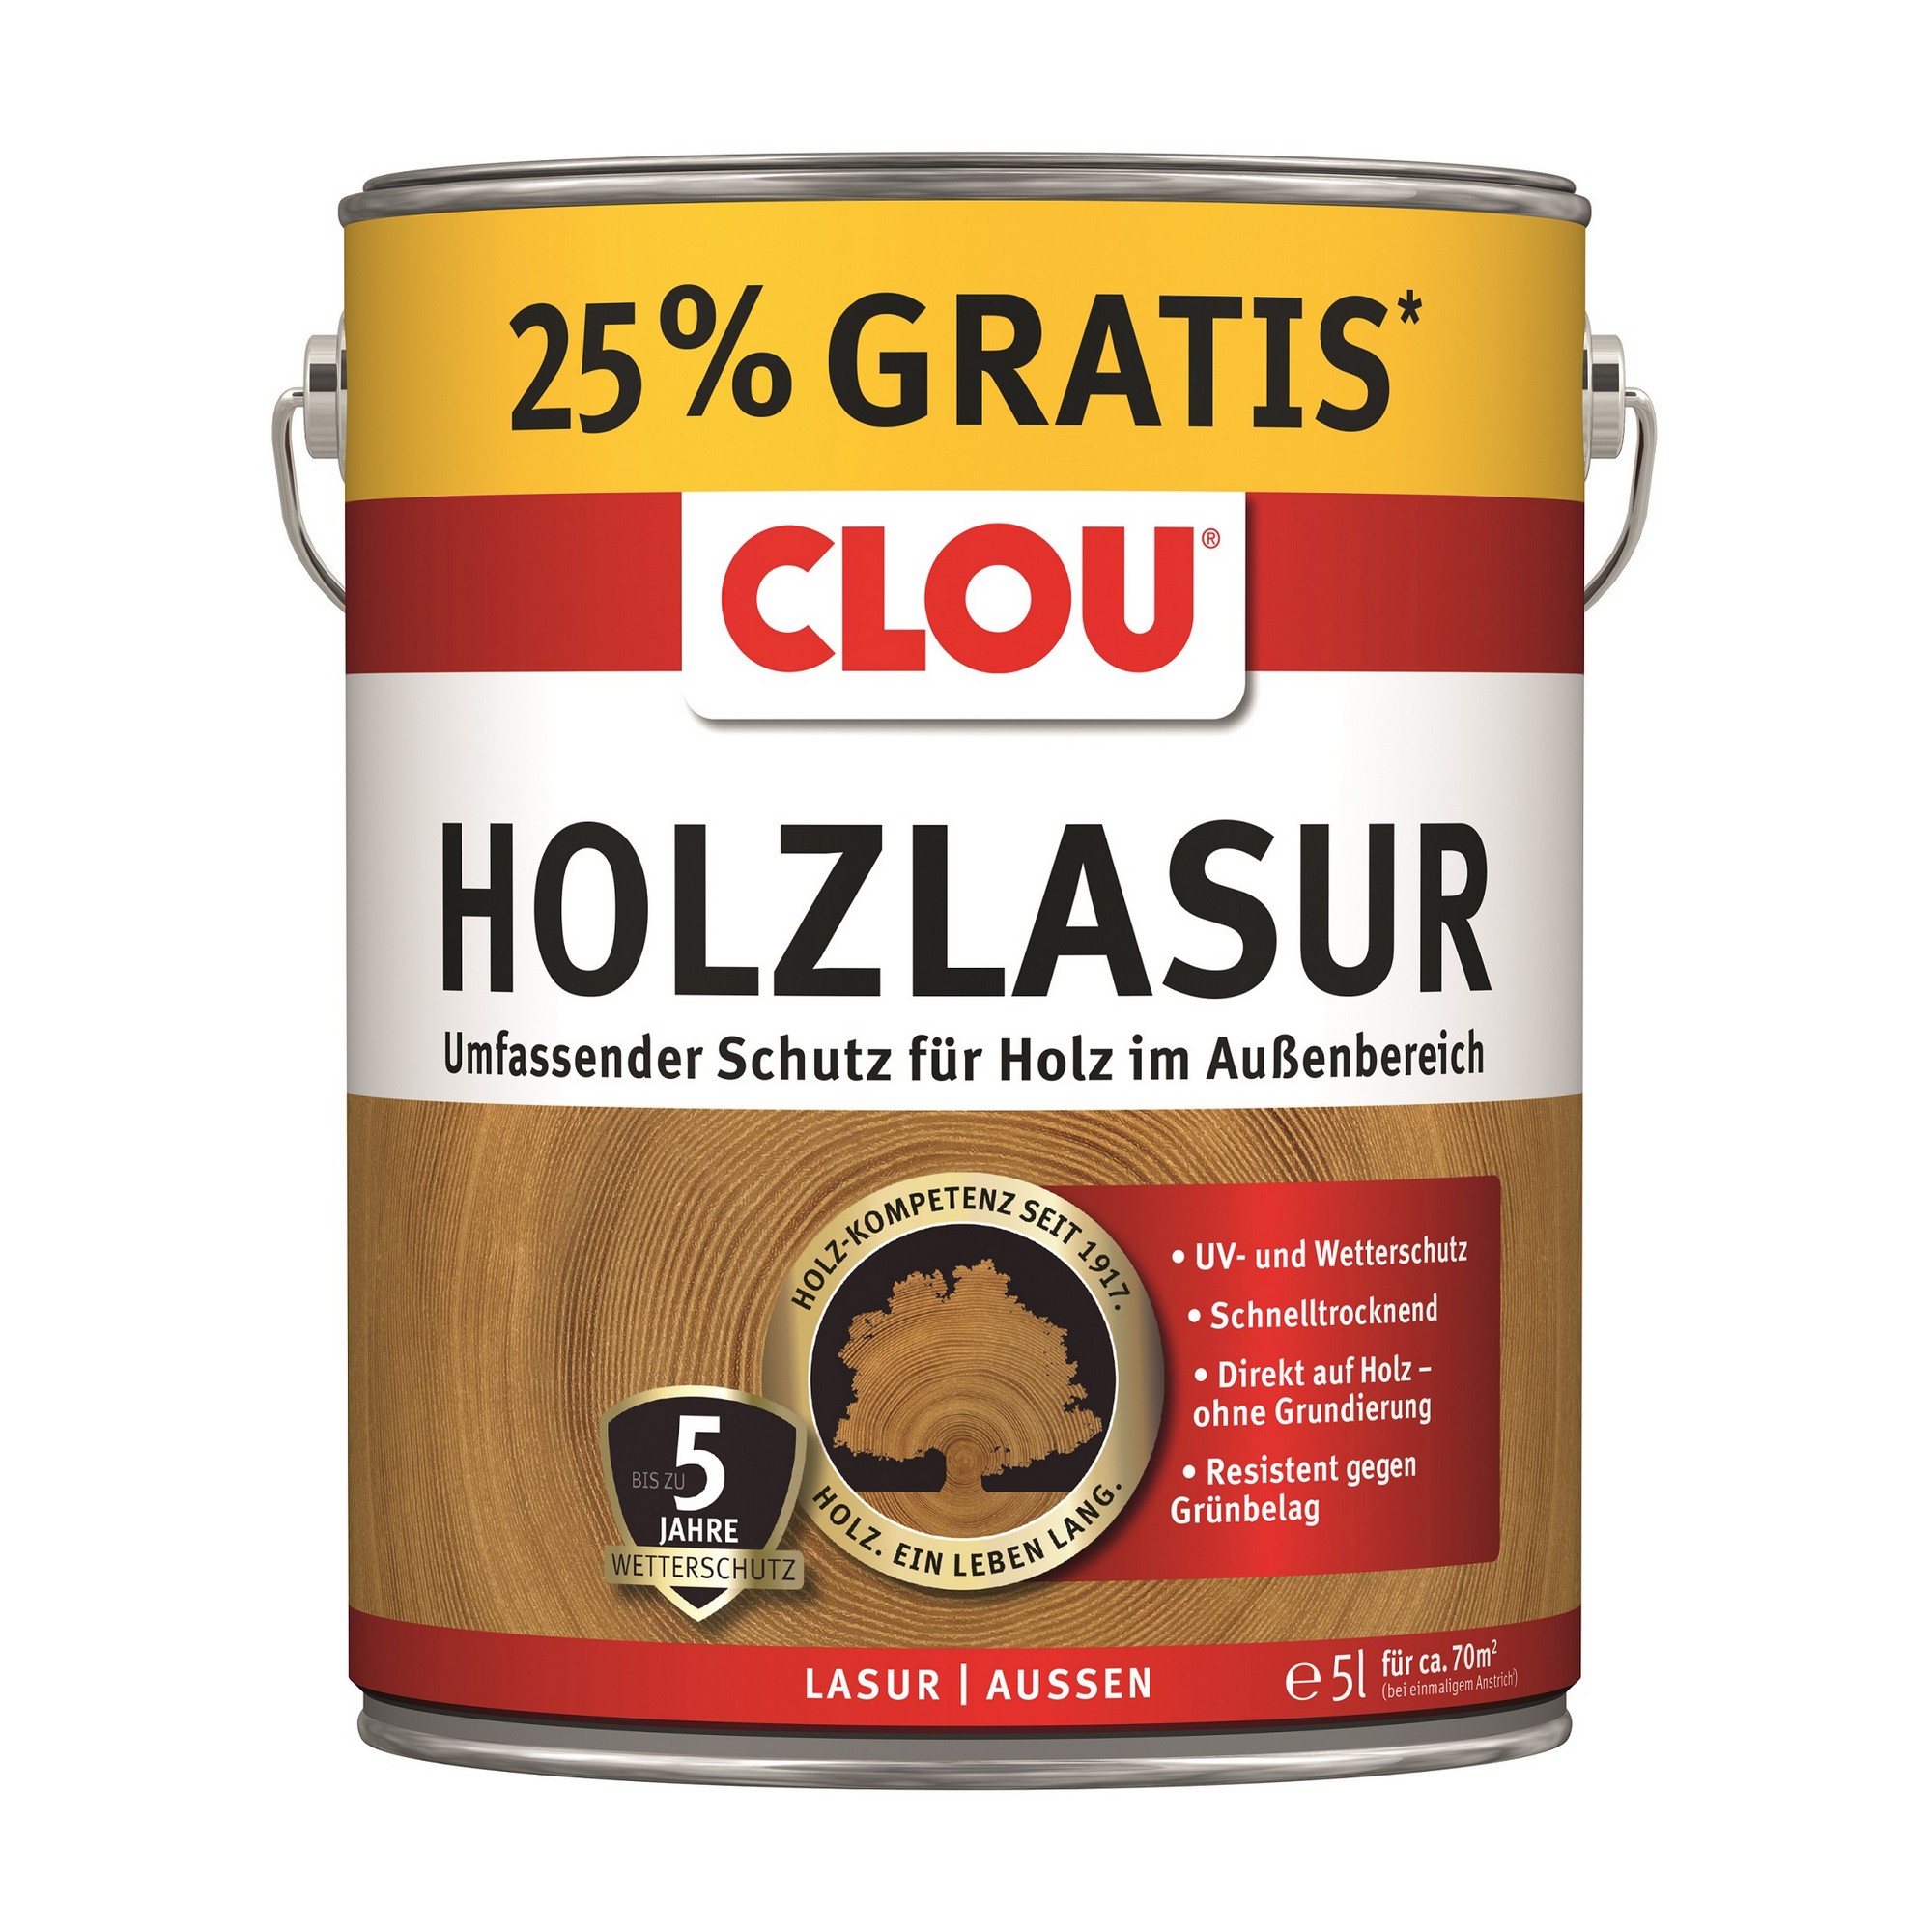 Holzlasur teakfarben 5 l + product picture